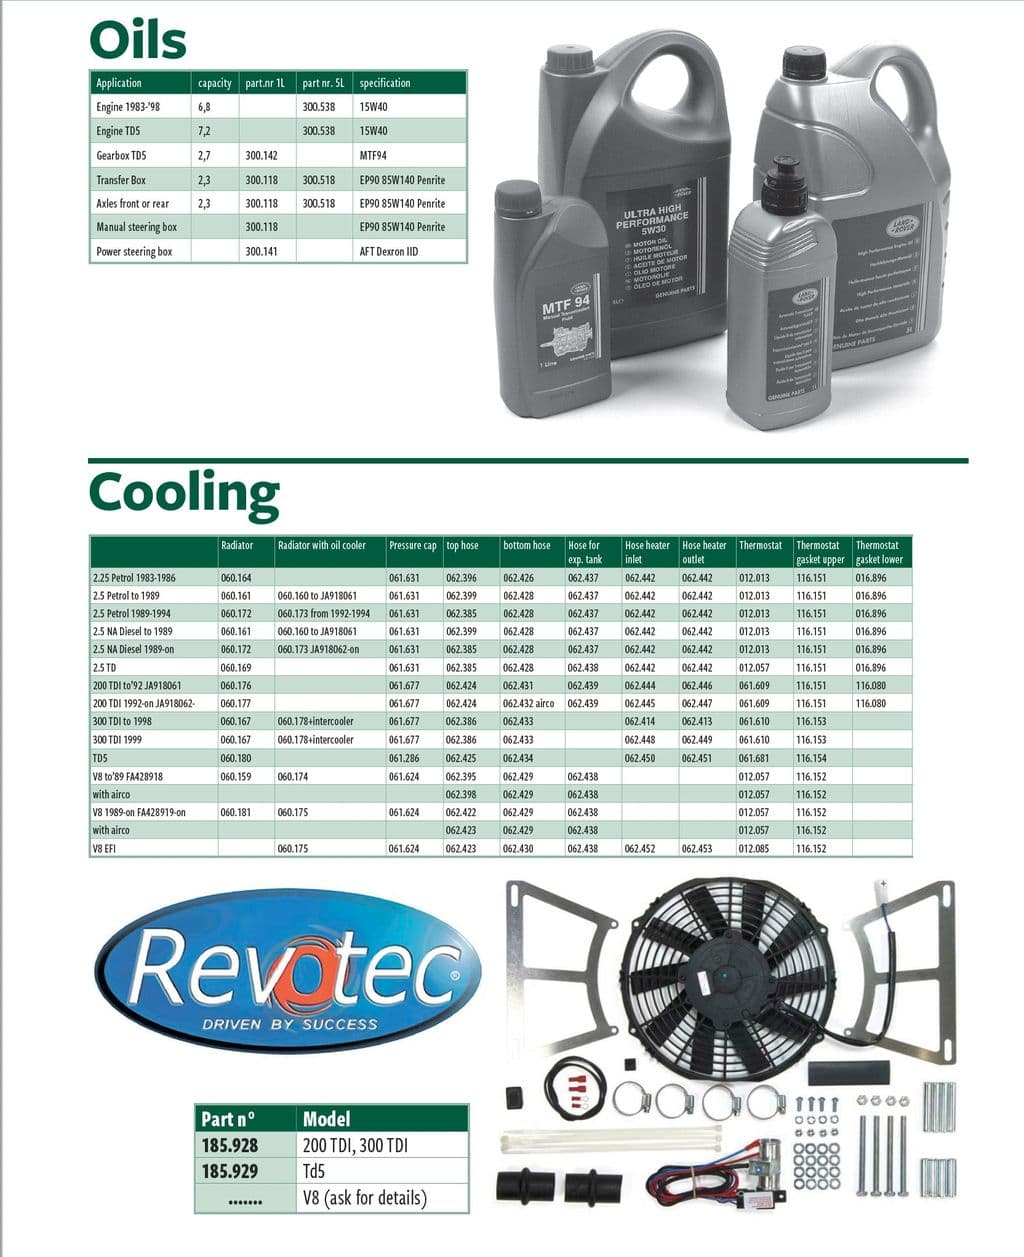 Oils & cooling - Engine mejoras de refrigeración - Refrigeración de motor - Land Rover Defender 90-110 1984-2006 - Oils & cooling - 1